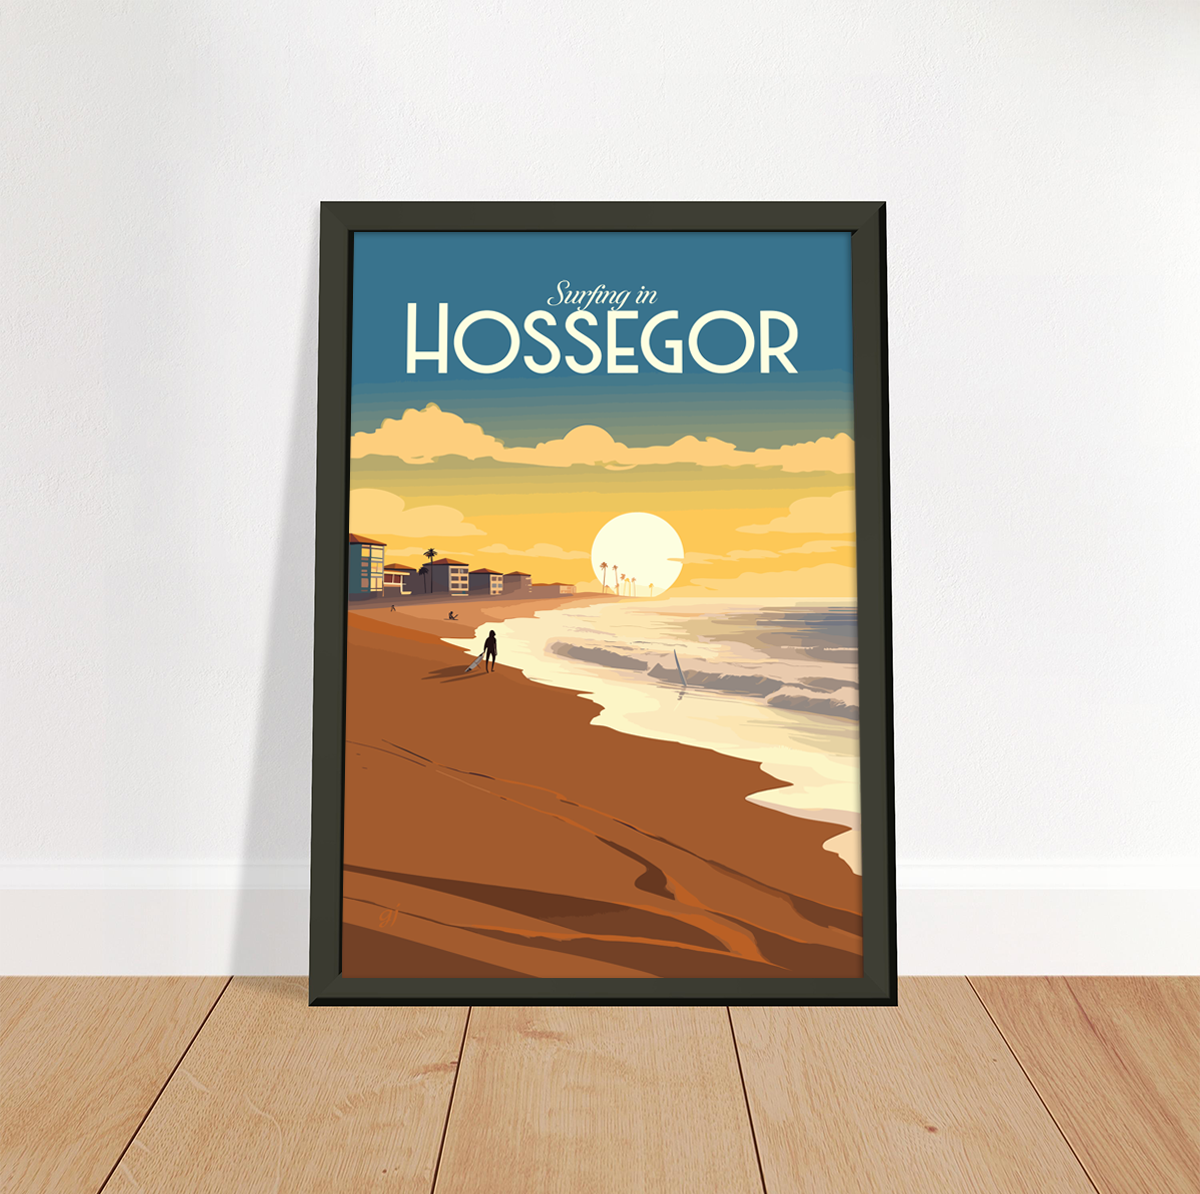 Hossegor poster by bon voyage design